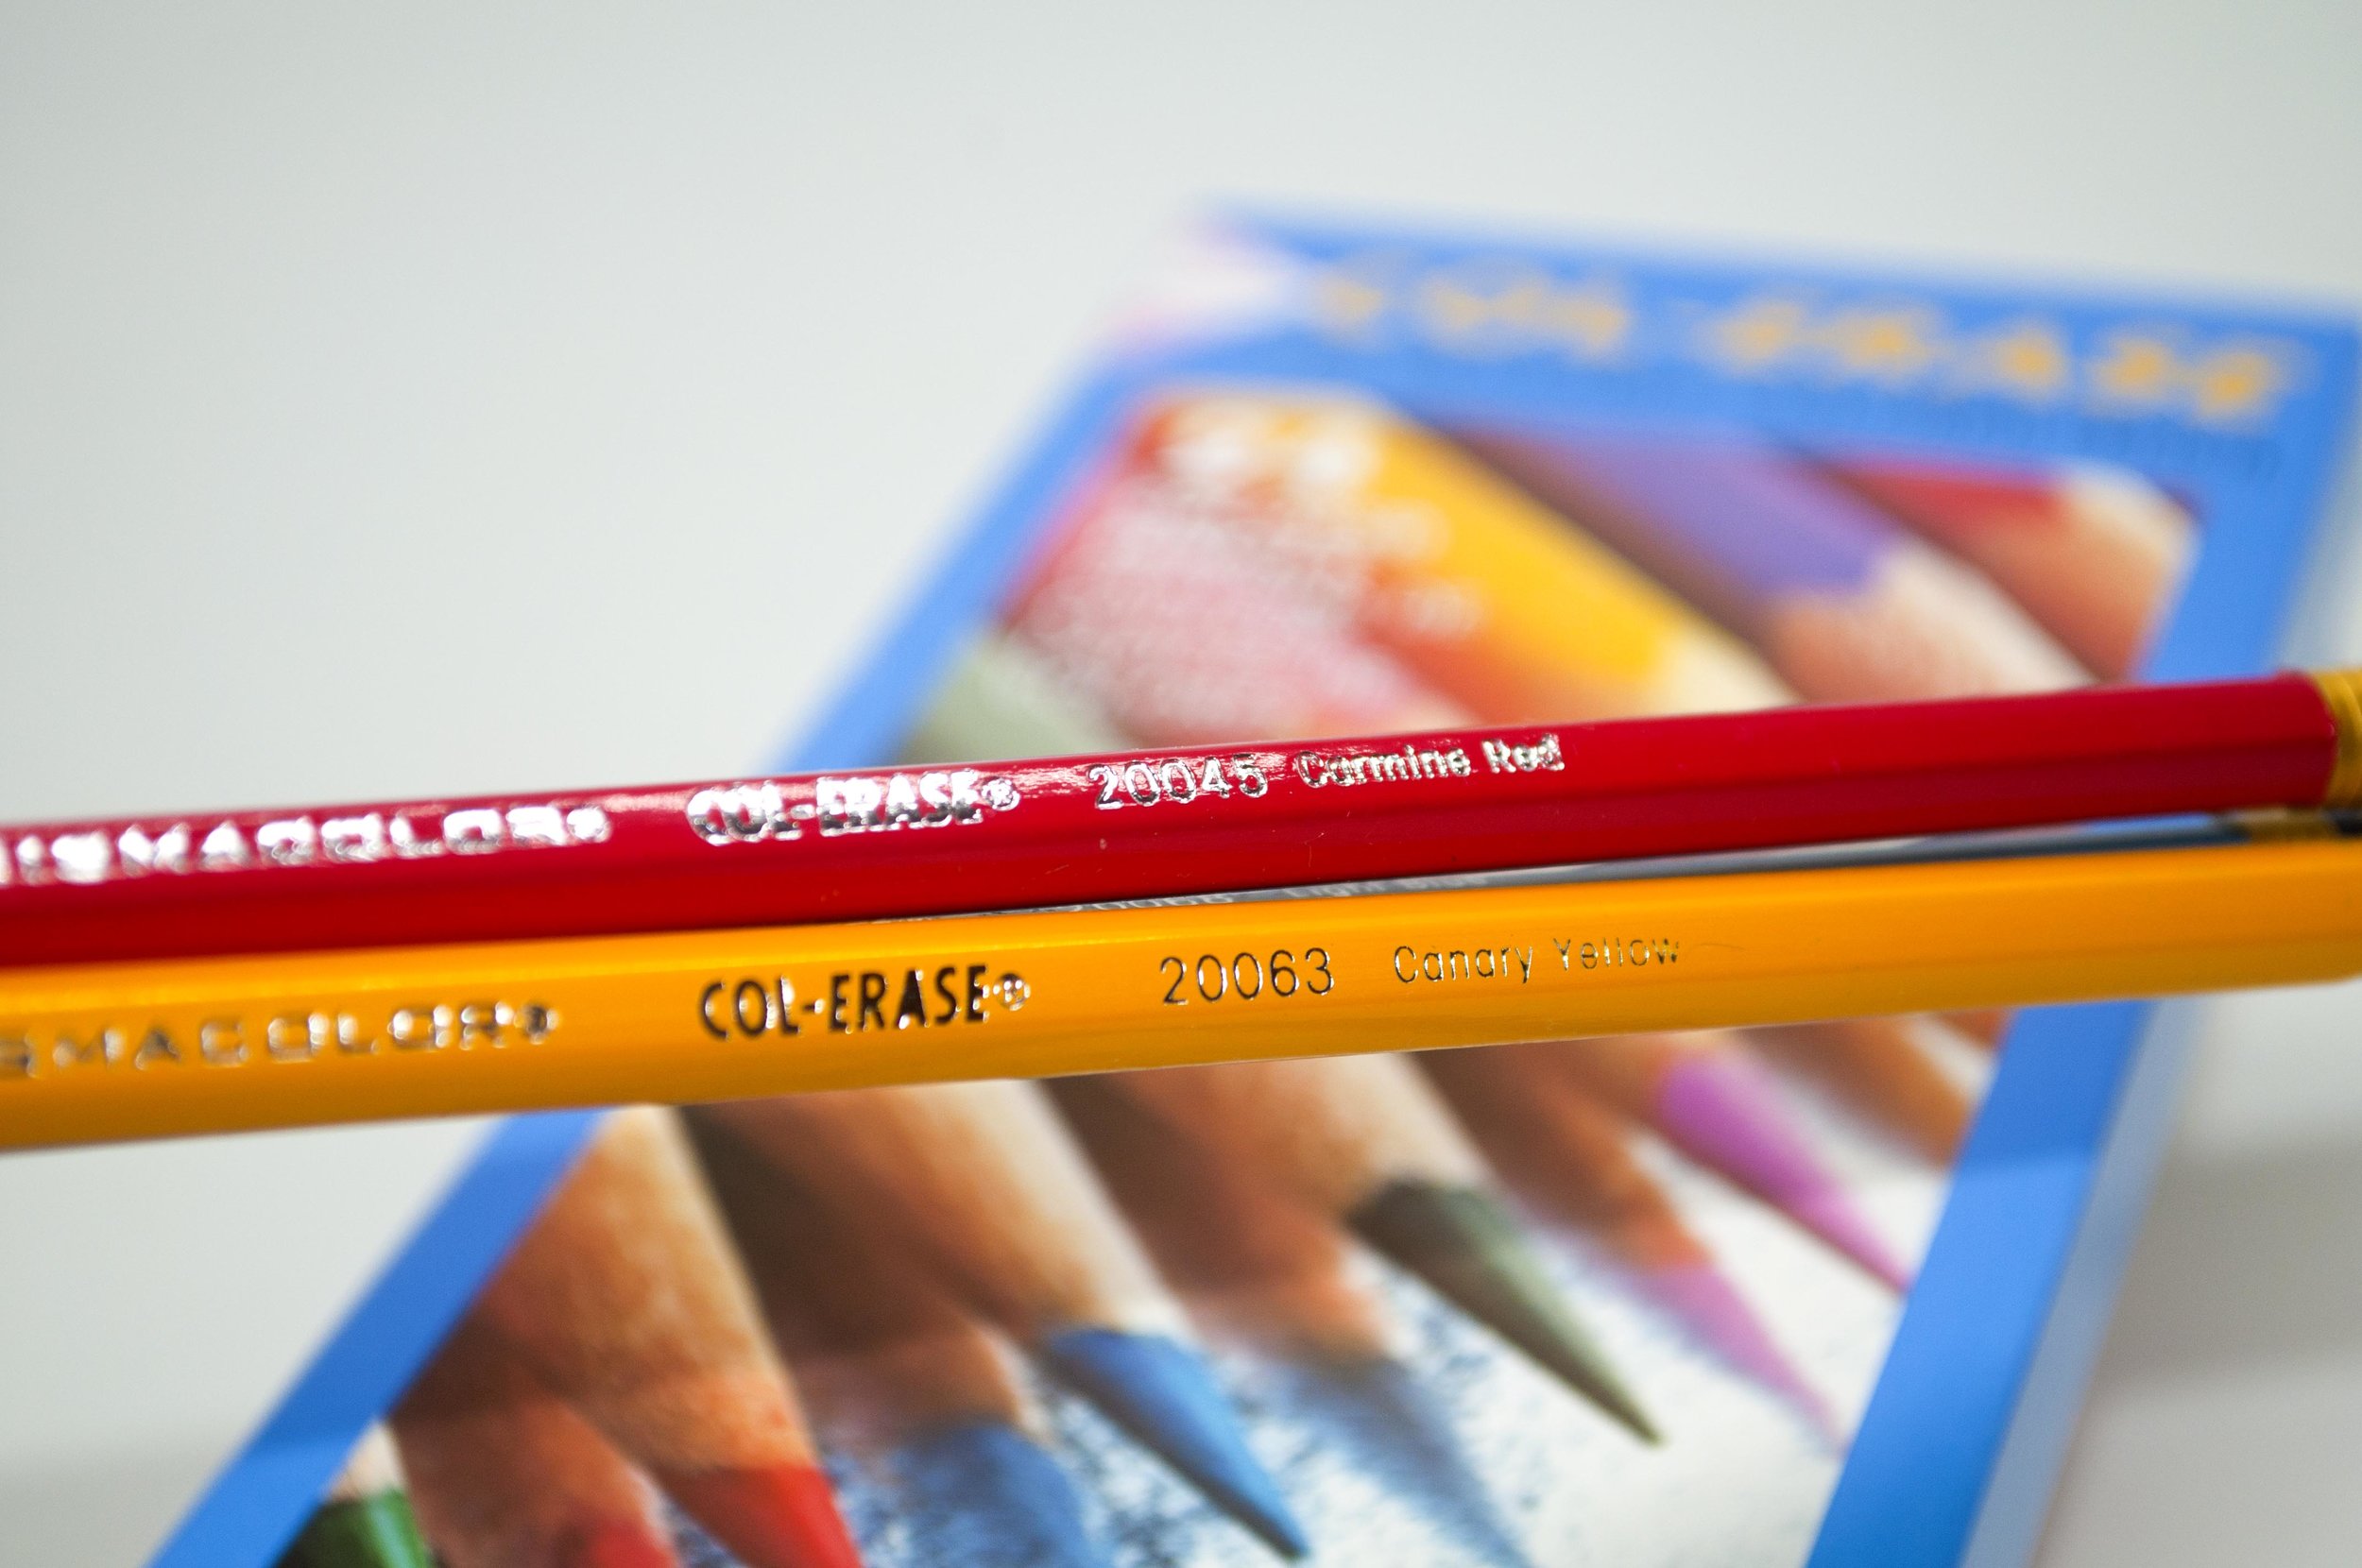 Prismacolor Col-Erase Erasable Color Pencils, Medium Point, Carmine Red,  Box Of 12 Color Pencils